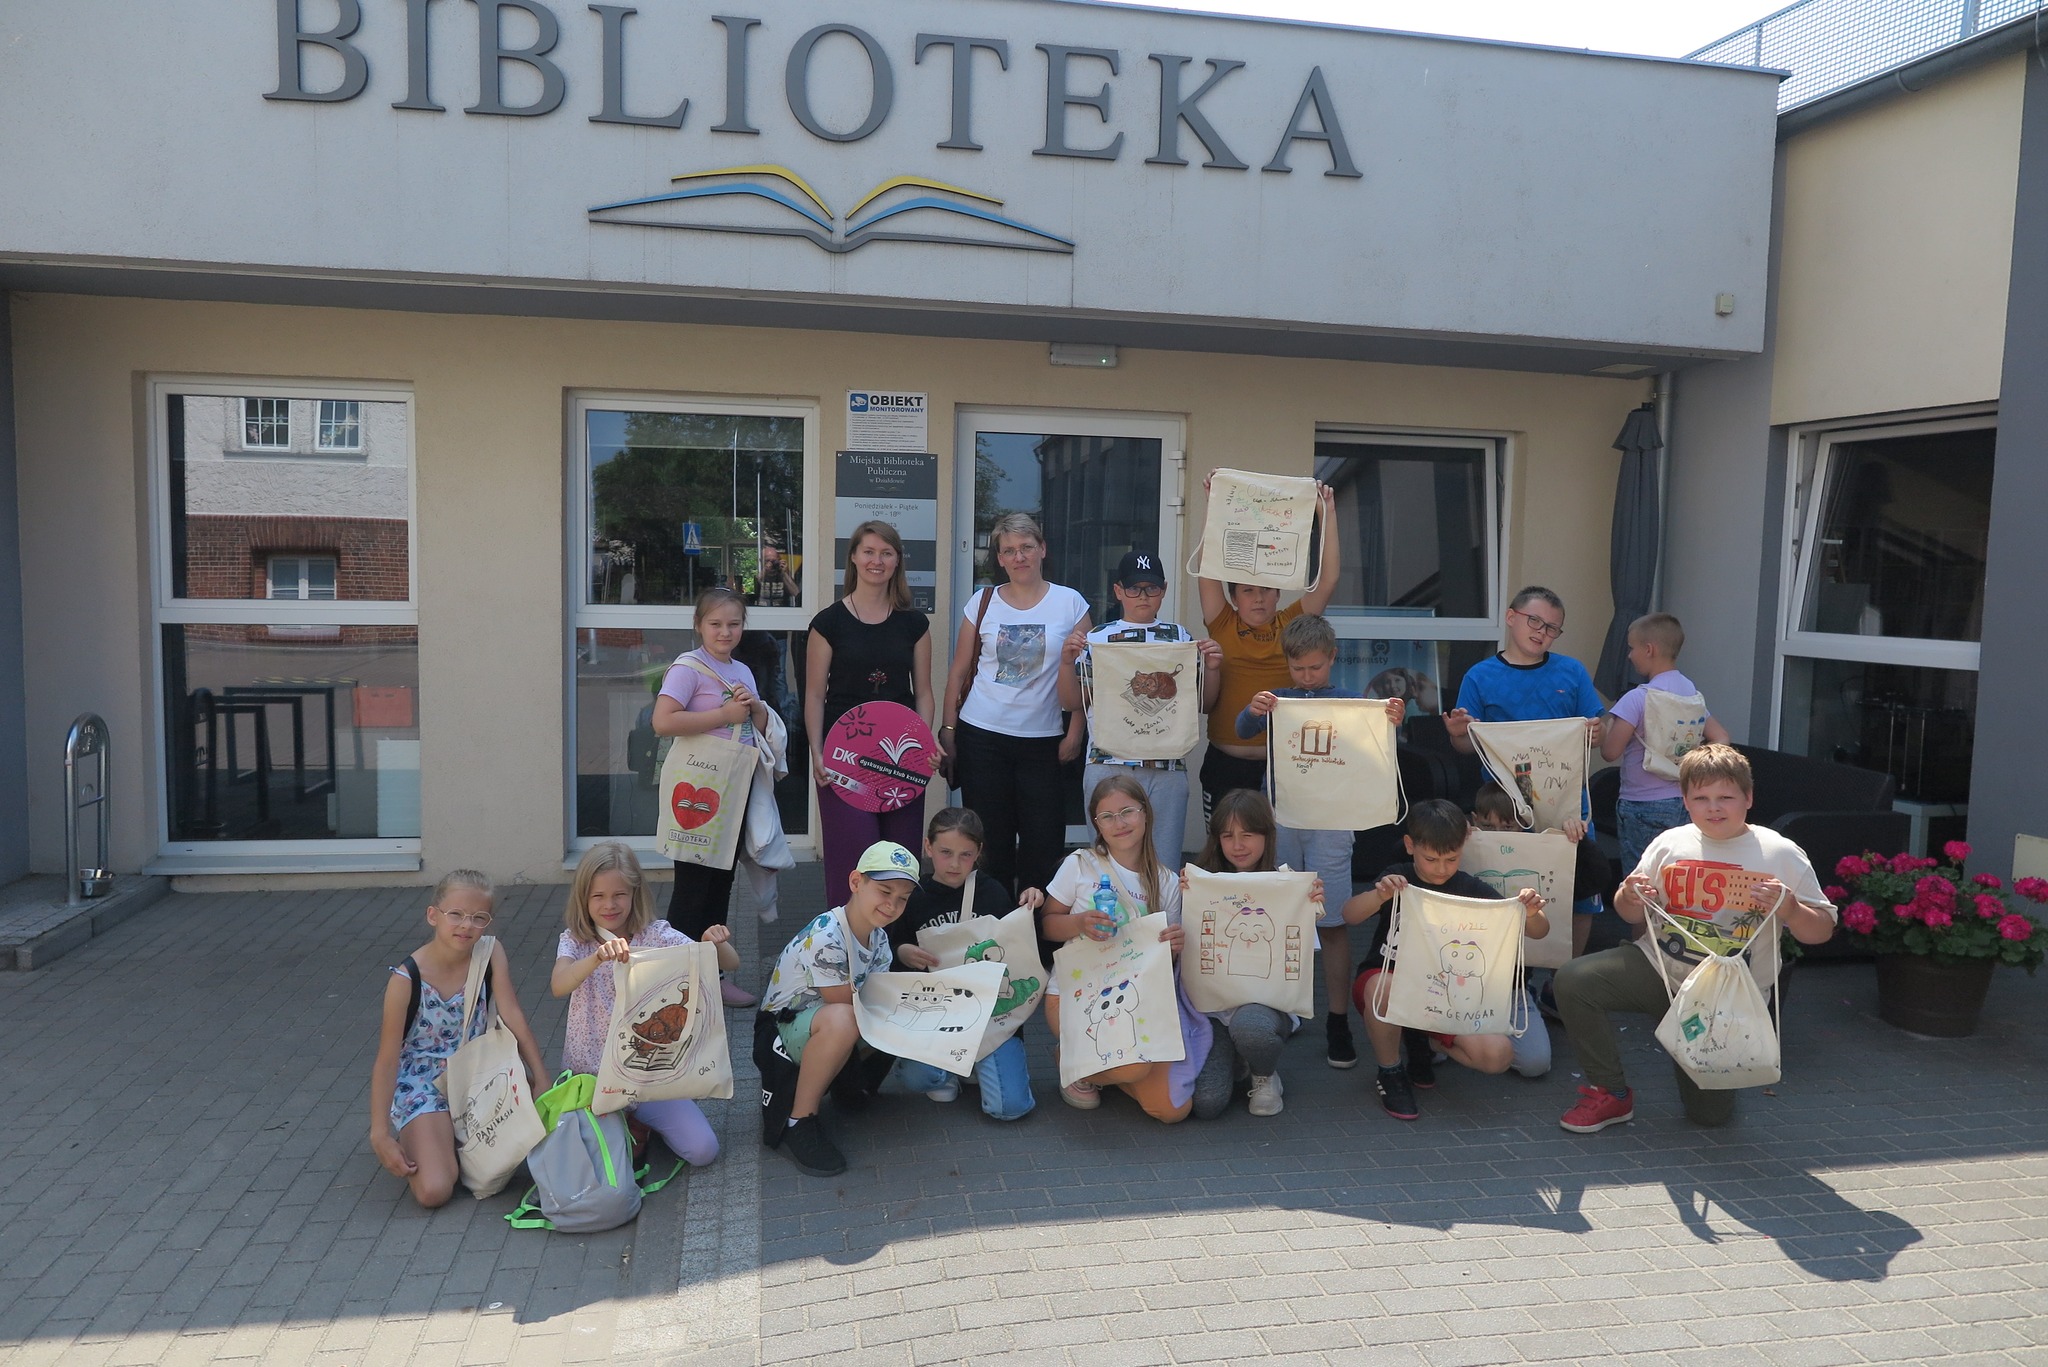 Członkowie klubu DKK SP1 pokazują pomalowane torby, stoją przed biblioteką